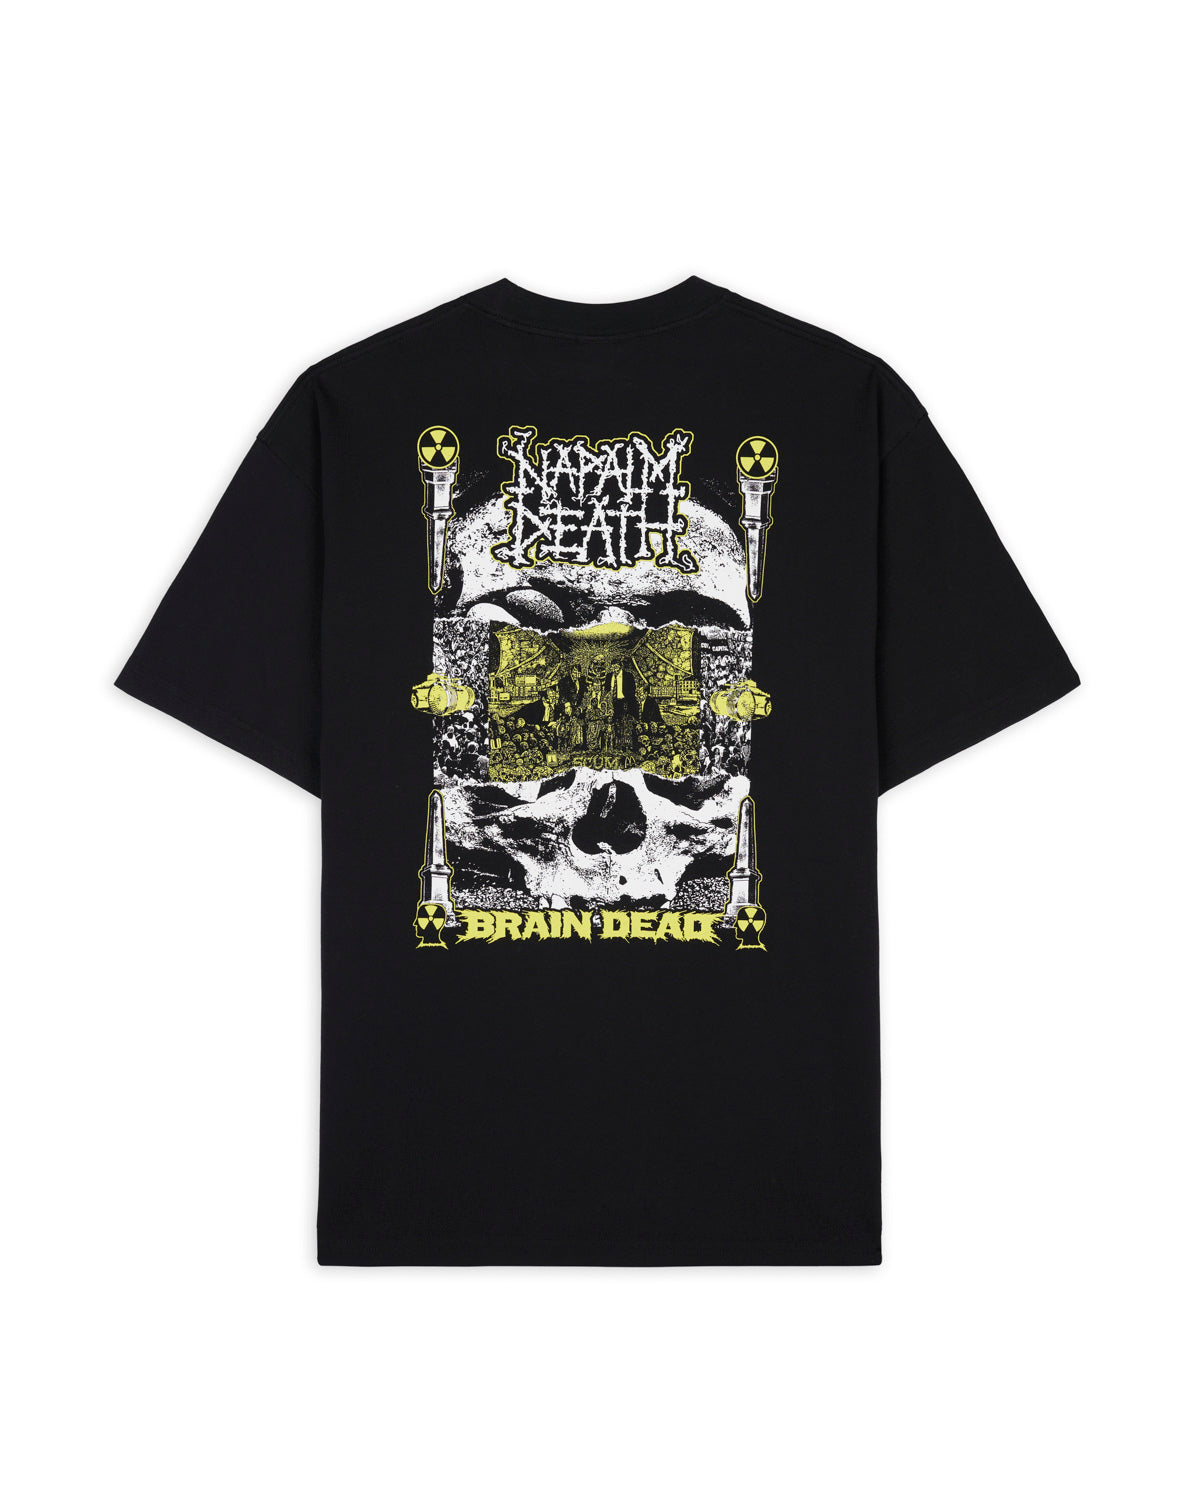 Napalm Death x Brain Dead Nuclear Scum T-Shirt- Black 2